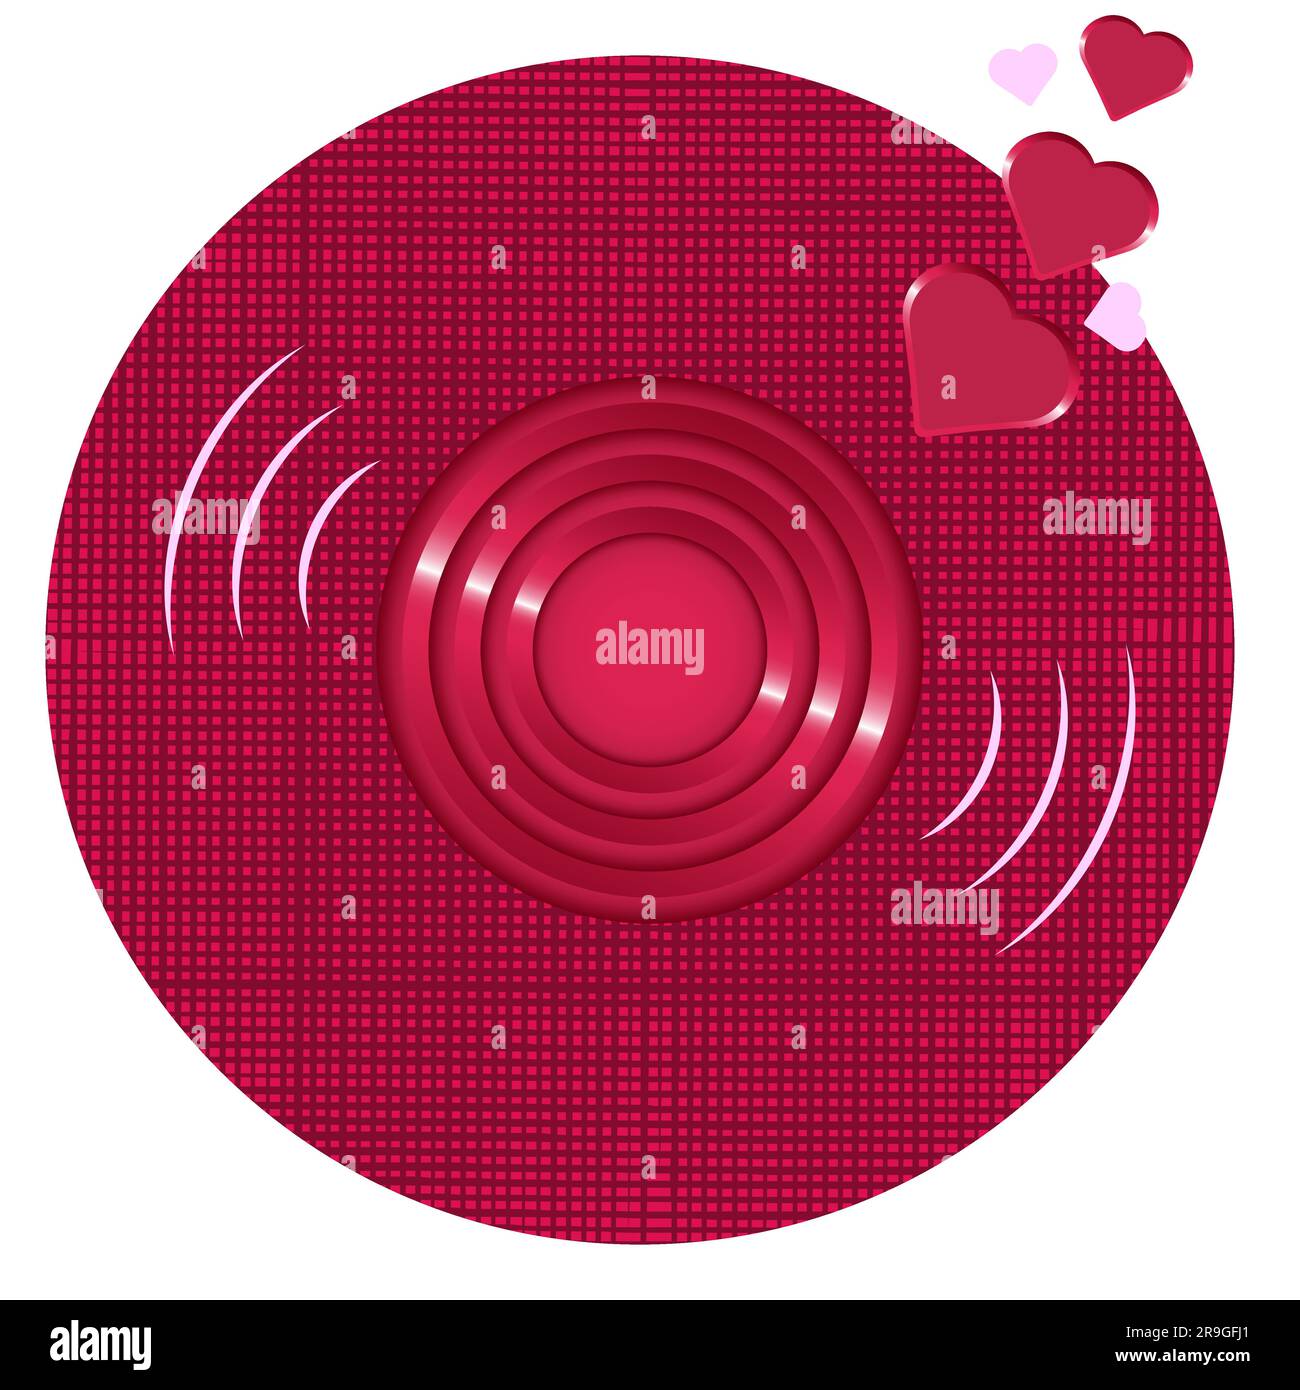 Rundfunk. Love Song Icon Grunge Textur in Kreisform Retro Dekorationselement Weihnachtsdesign Vektor Illustration isoliert auf Weiß Stock Vektor